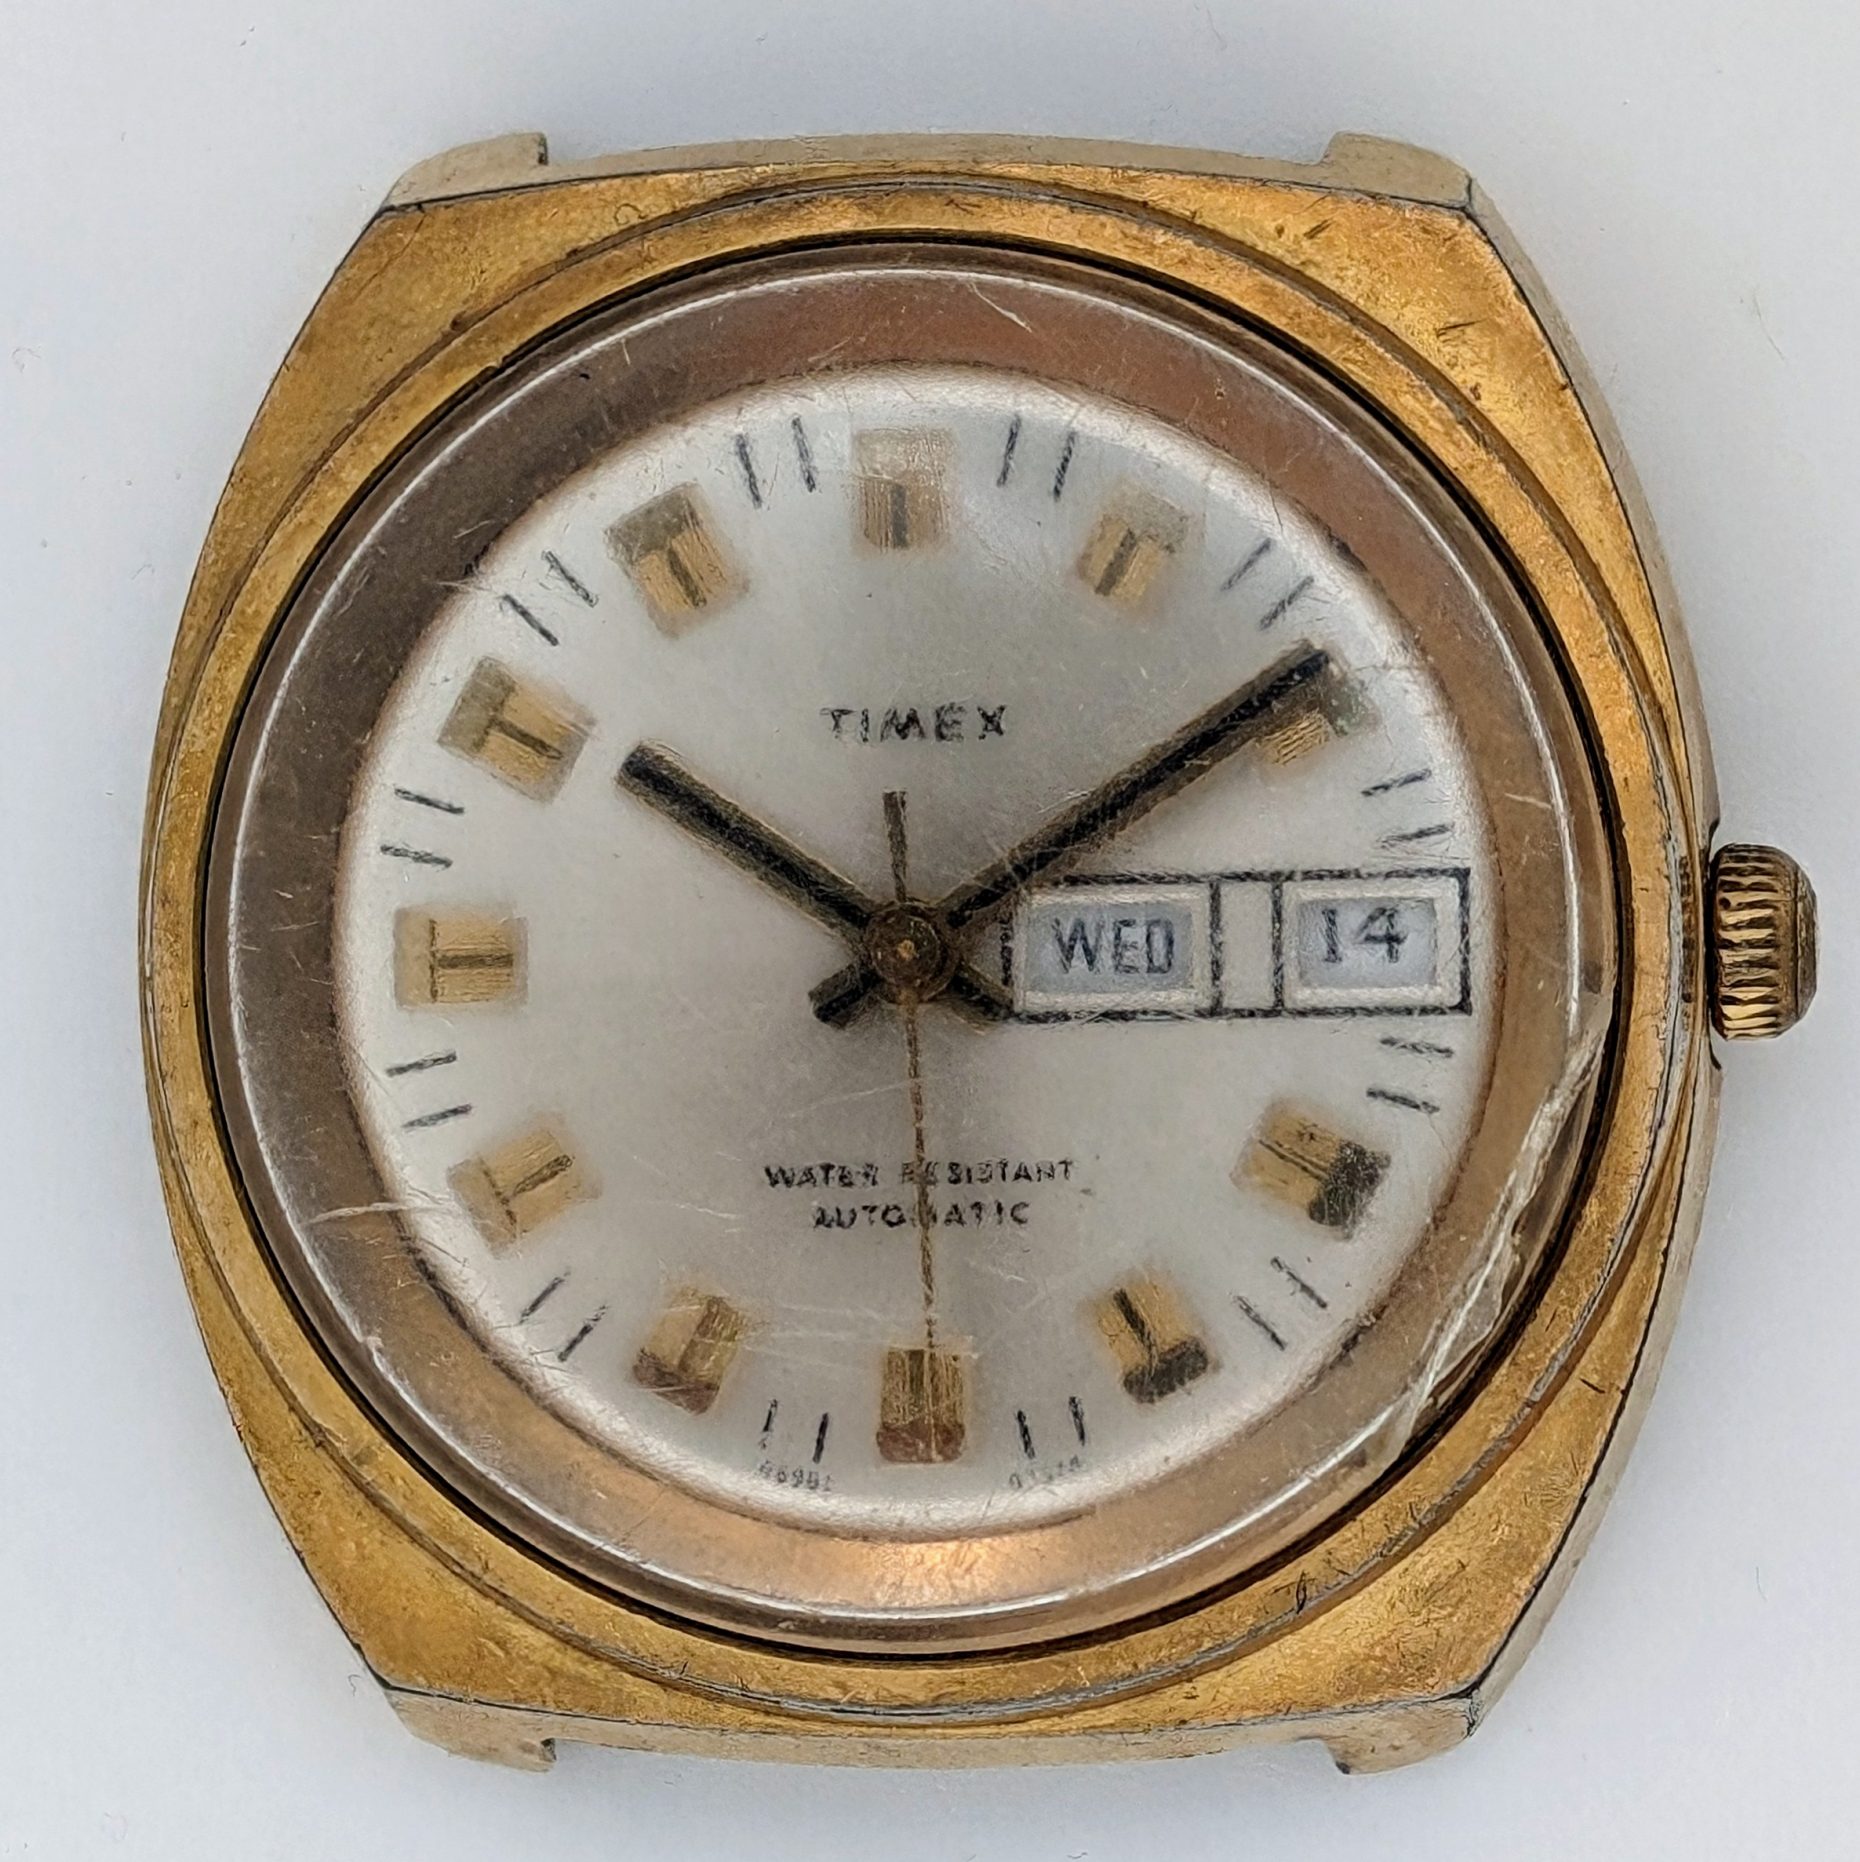 Timex Viscount 46961 03374 1974 watch